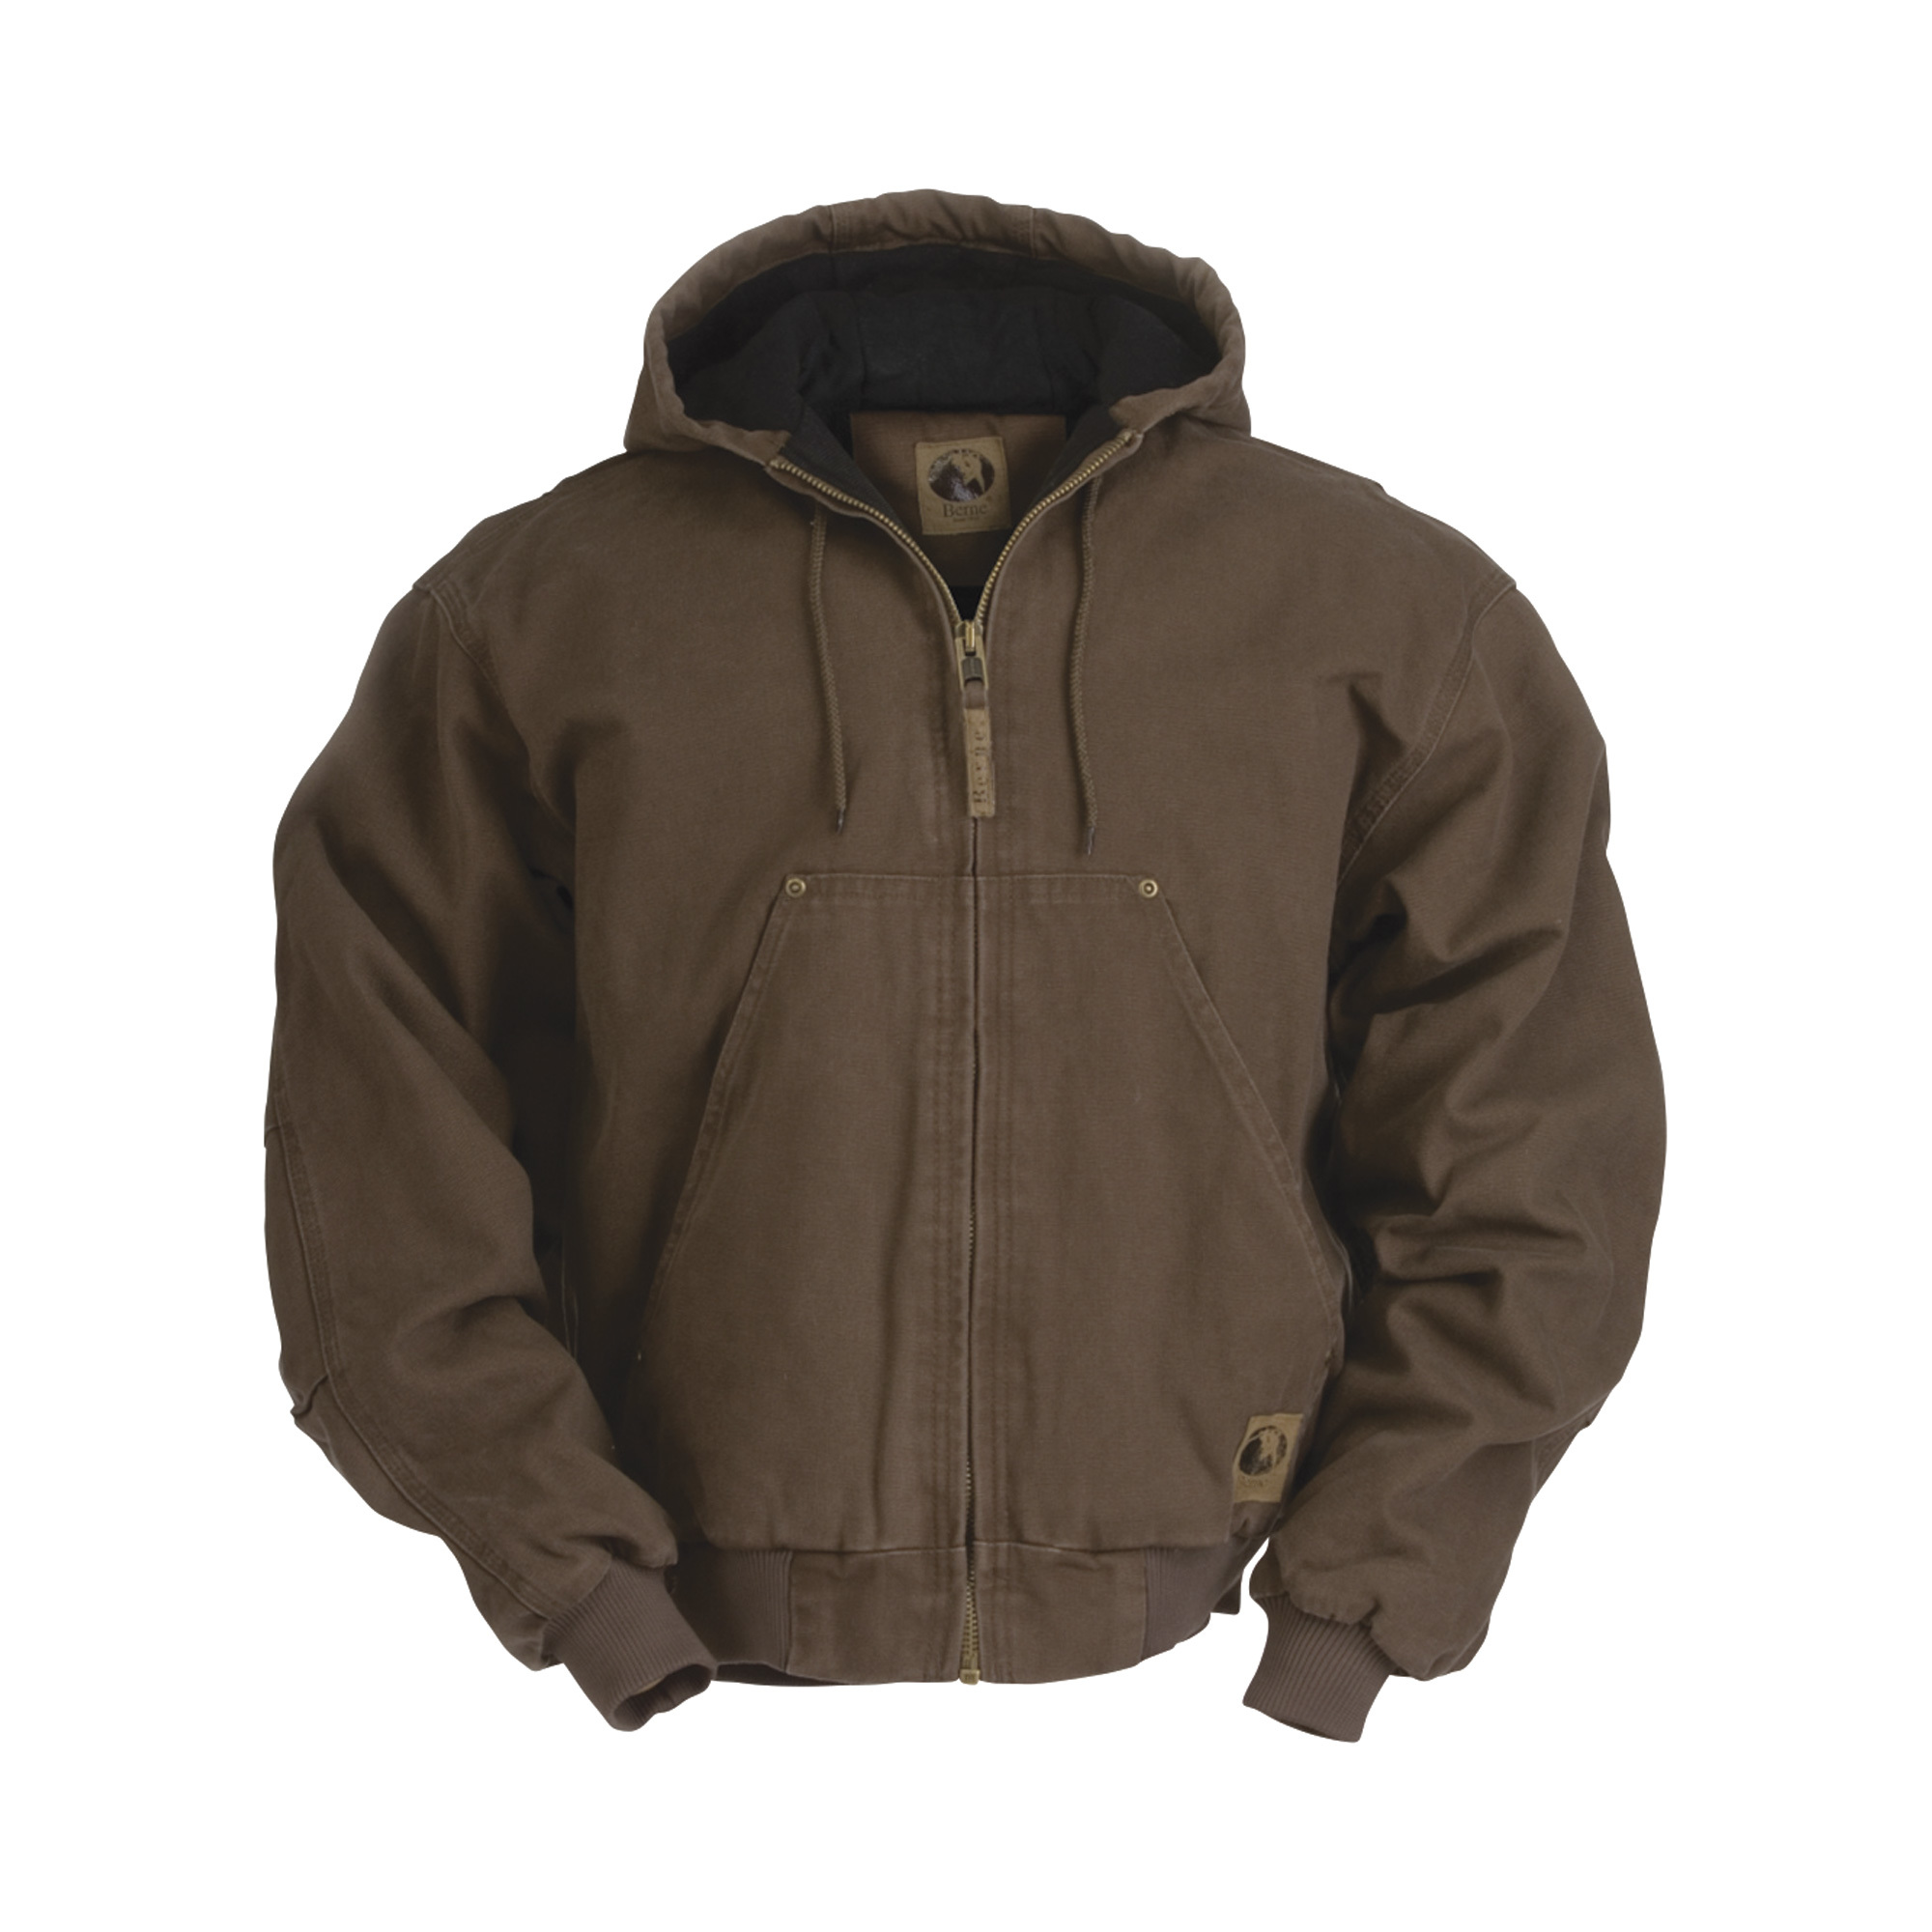 Berne Men's Original Washed Hooded Jacket - Quilt Lined, Bark, 2XL, Model HJ375BBR520